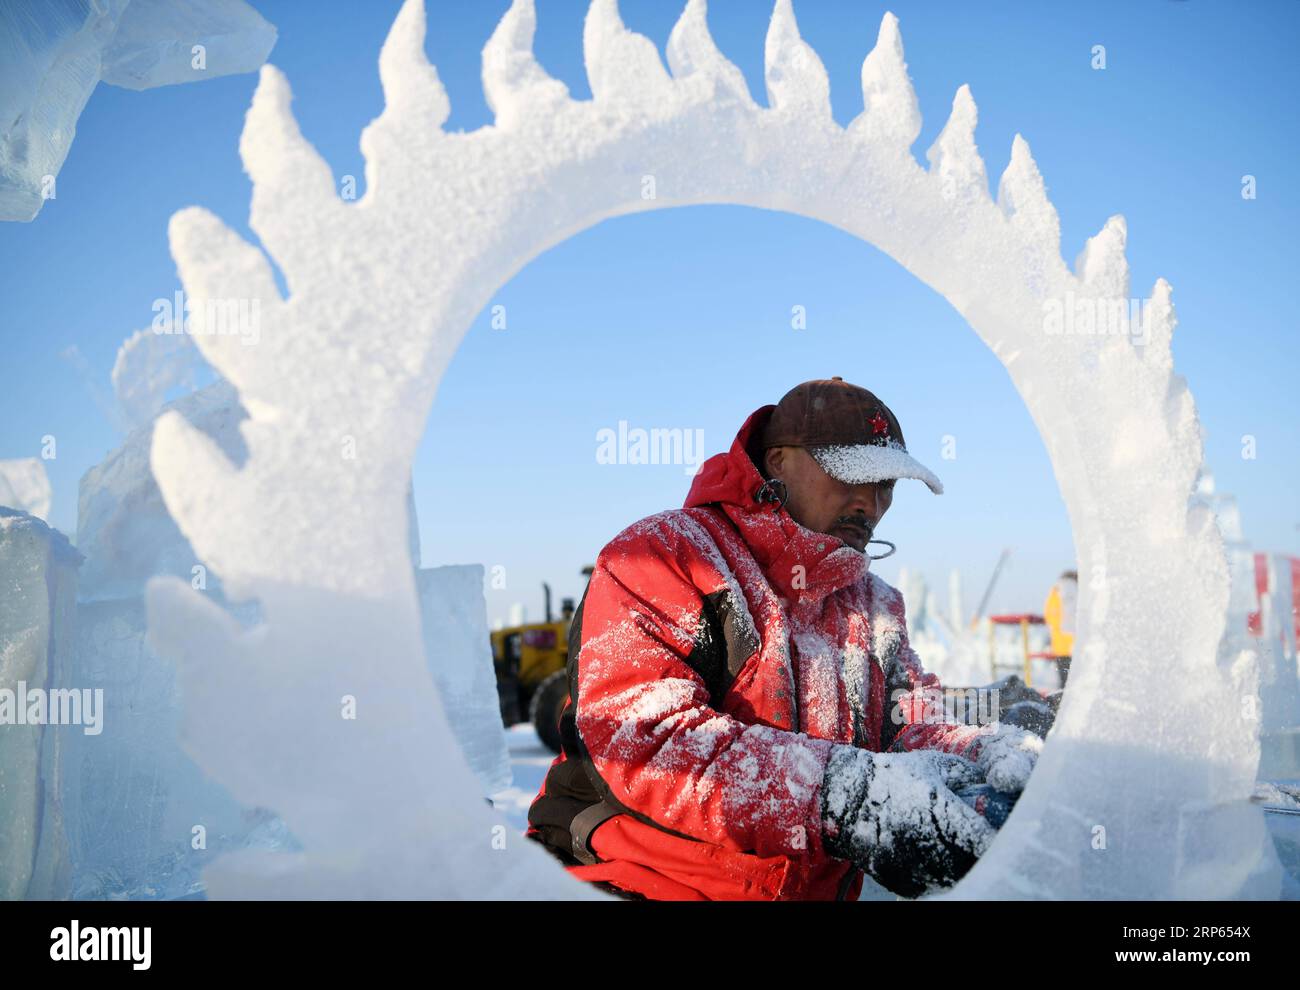 (190102) -- HARBIN, 2 gennaio 2019 (Xinhua) -- Un concorrente scolpisce una scultura di ghiaccio durante un concorso internazionale di scultura di ghiaccio a Harbin, capitale della provincia di Heilongjiang della Cina nord-orientale, 2 gennaio 2019. Alla competizione hanno partecipato in totale 16 squadre provenienti da 12 paesi e regioni. (Xinhua/Wang Jianwei) CHINA-HARBIN-ICE SCULPTURE-COMPETITION (CN) PUBLICATIONxNOTxINxCHN Foto Stock